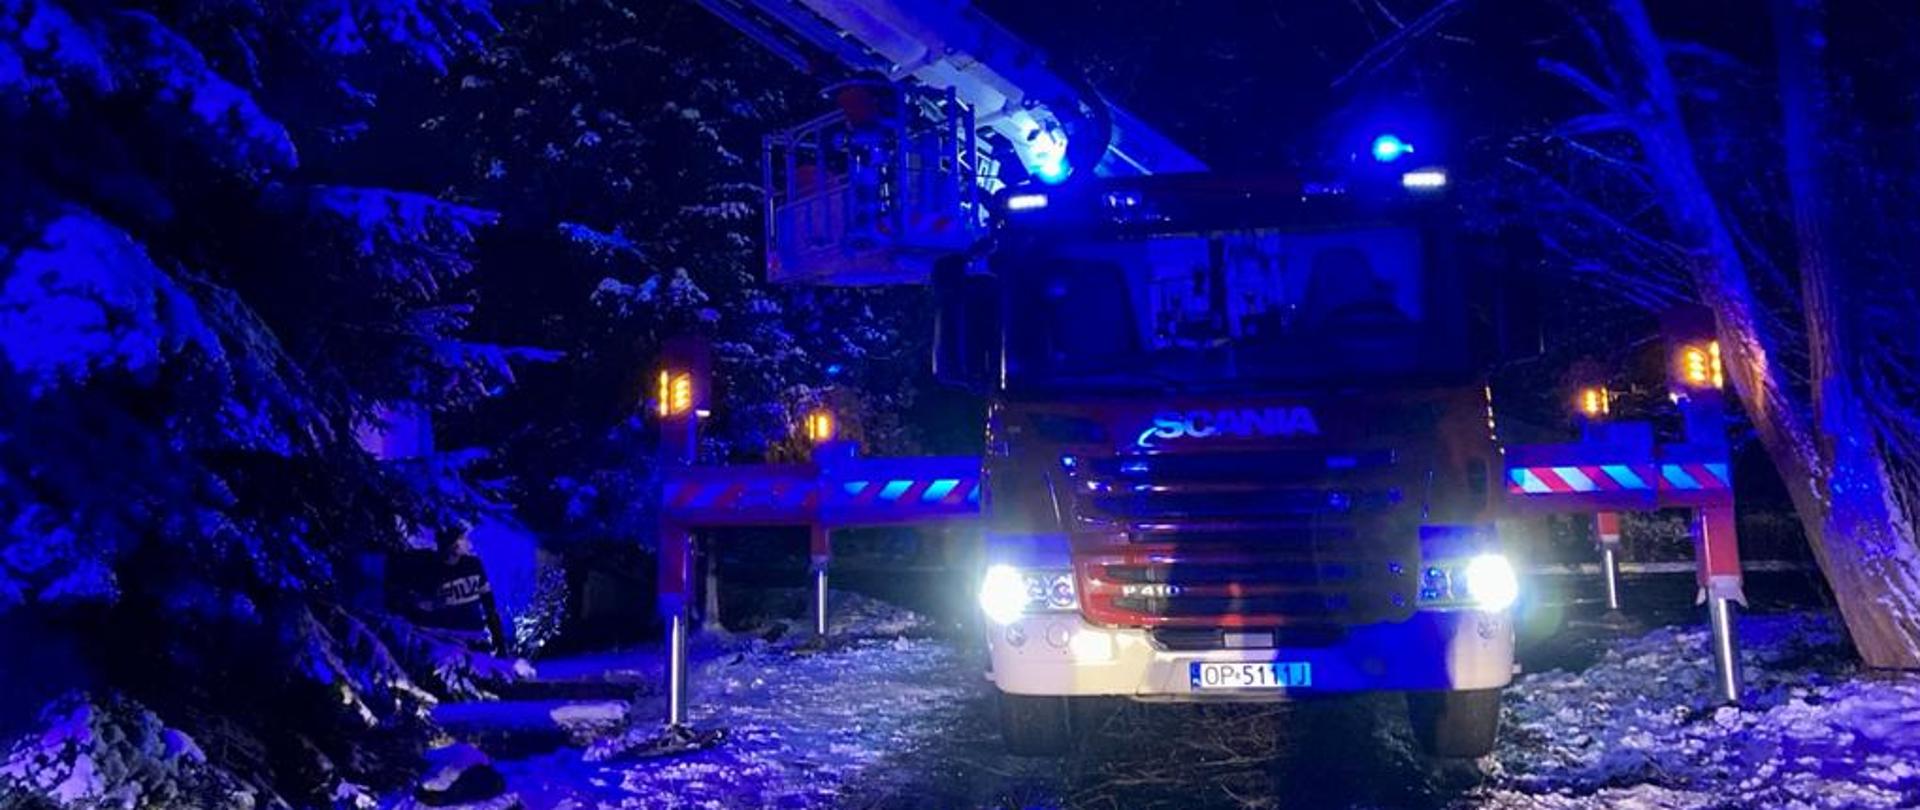 Zdjęcie przedstawia ustawiony podnośnik straży pożarnej w porze nocnej rozstawiający się pomiędzy drzewami i krzewami. Widok podnośnika marki Scania koloru czerwonego od przodu pojazdu.